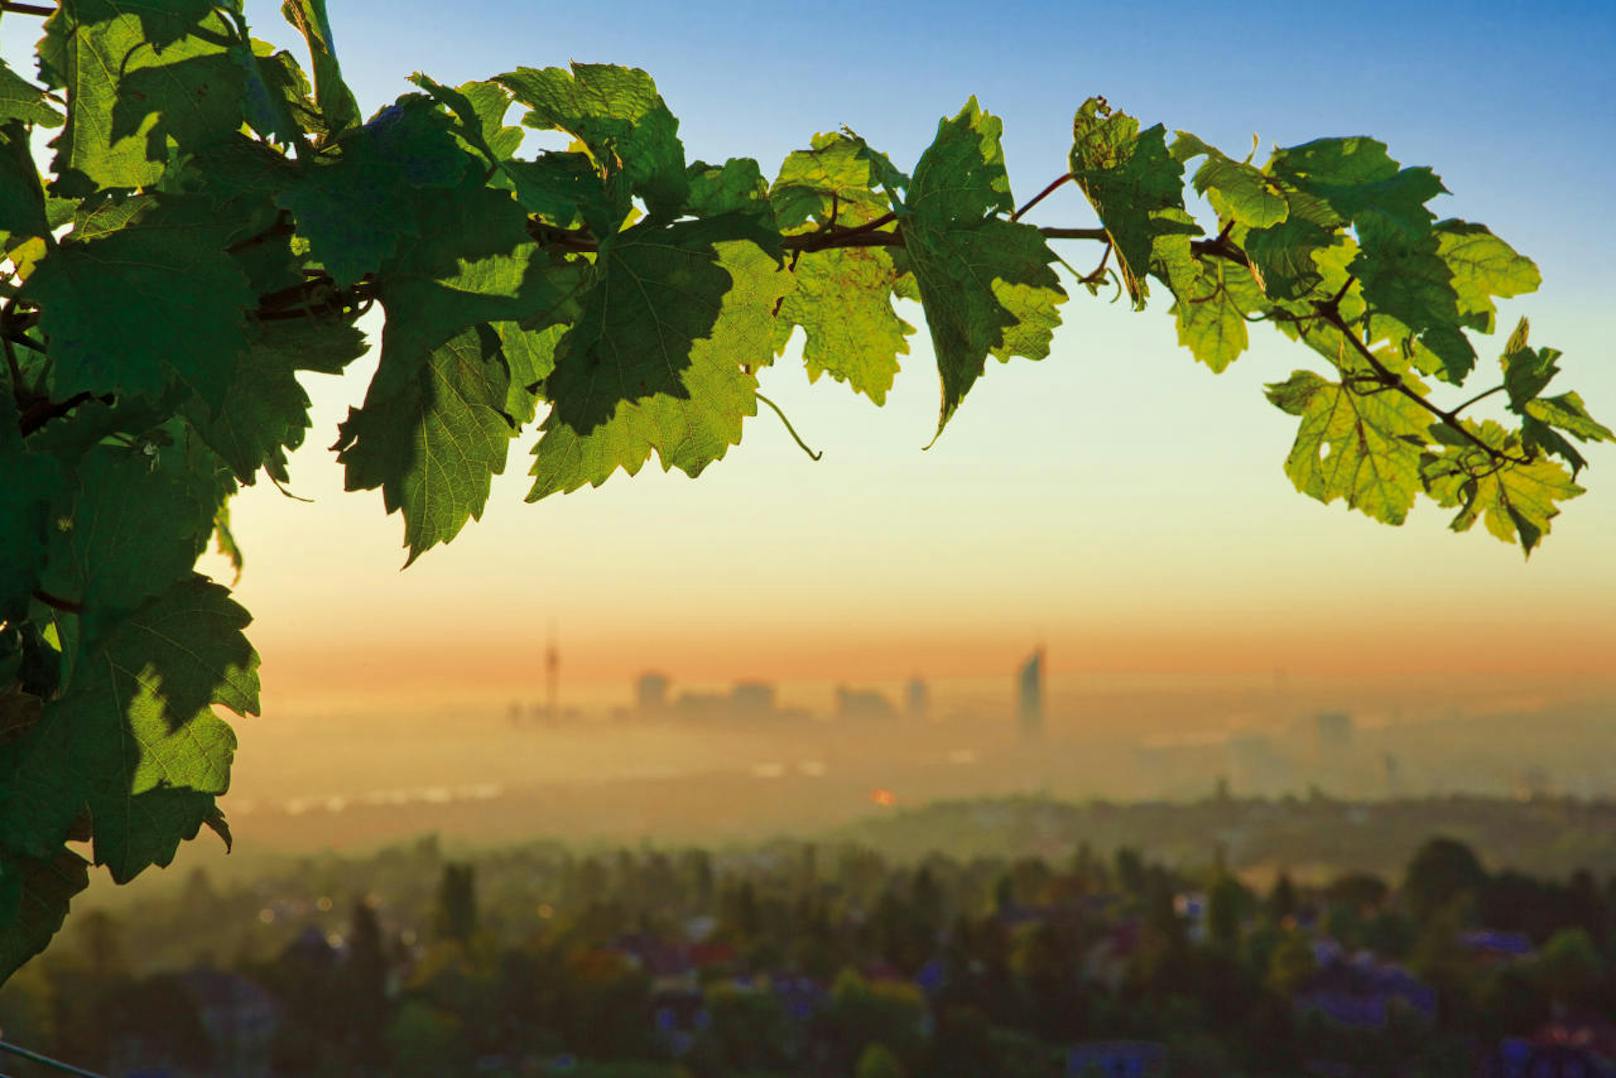 Im Wiener Grüngürtel, der 12.000 Hektar groß ist und die Stadt fast lückenlos umschließt, wandern die Besucher durch ursprüngliche Wälder und üppige Weingärten.